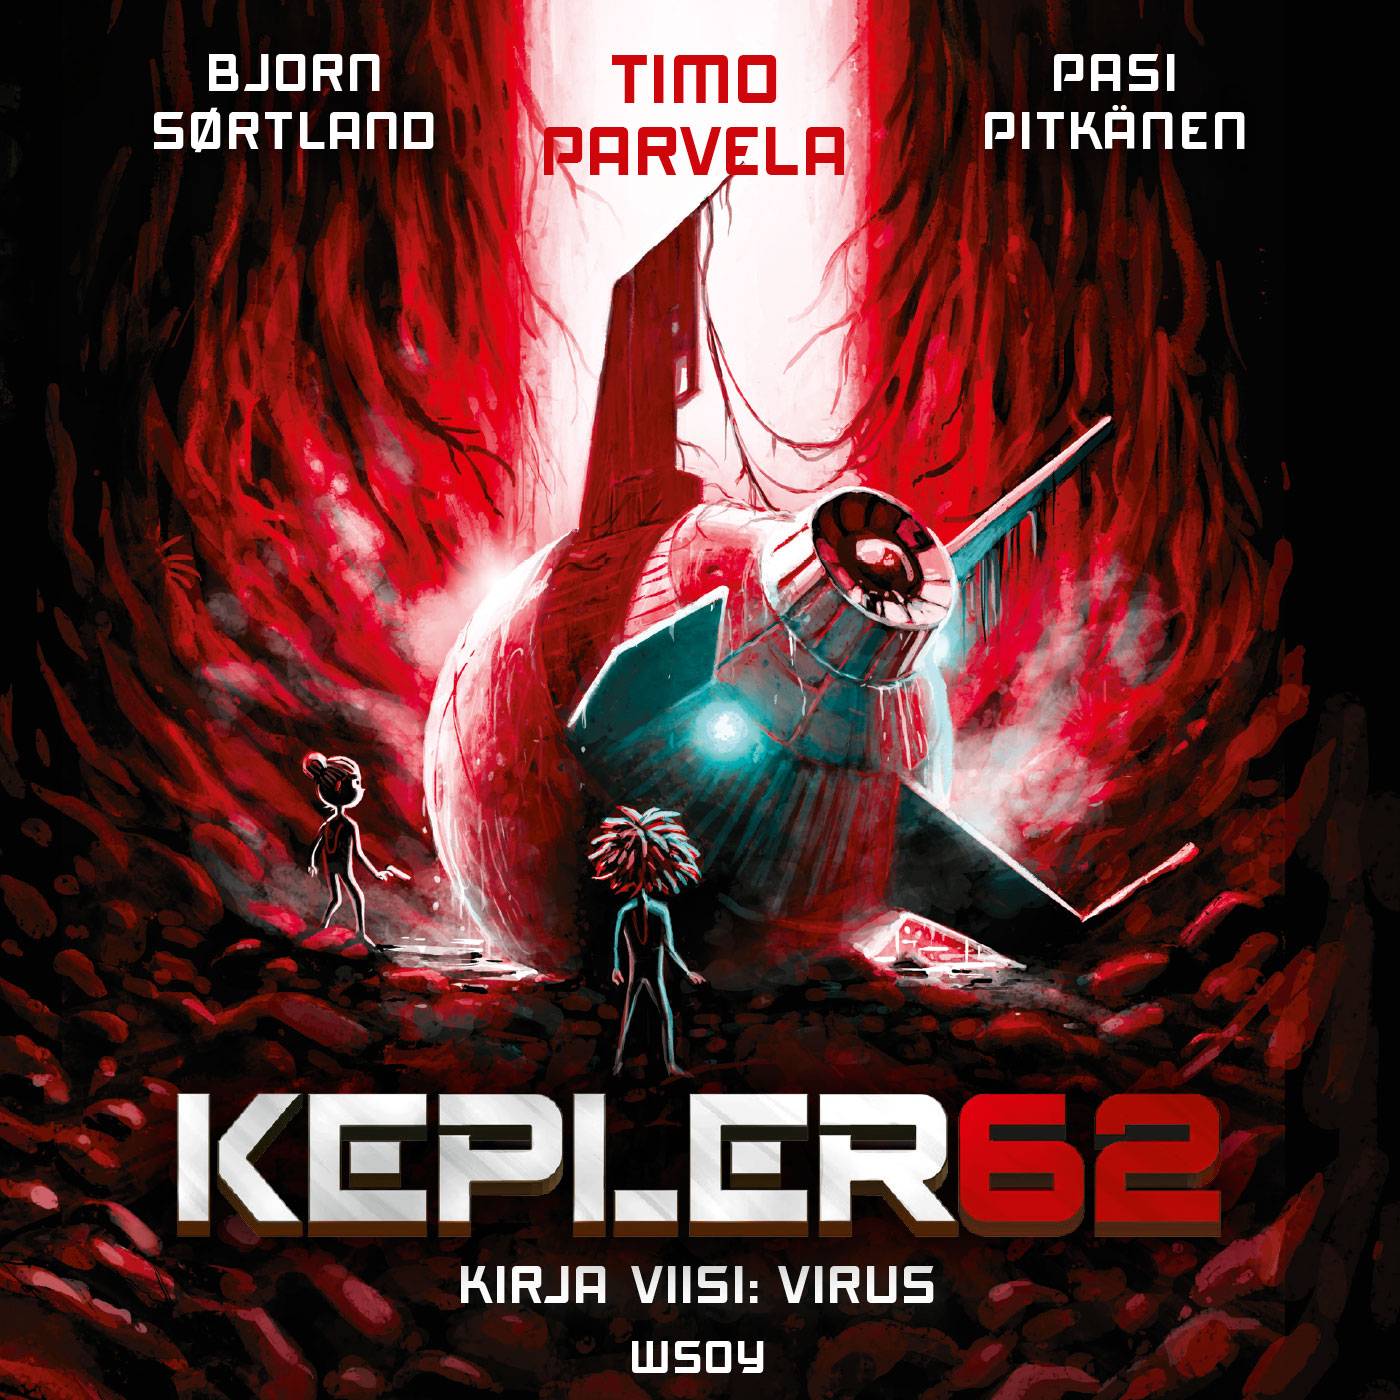 Kepler62 : kirja viisi - virus